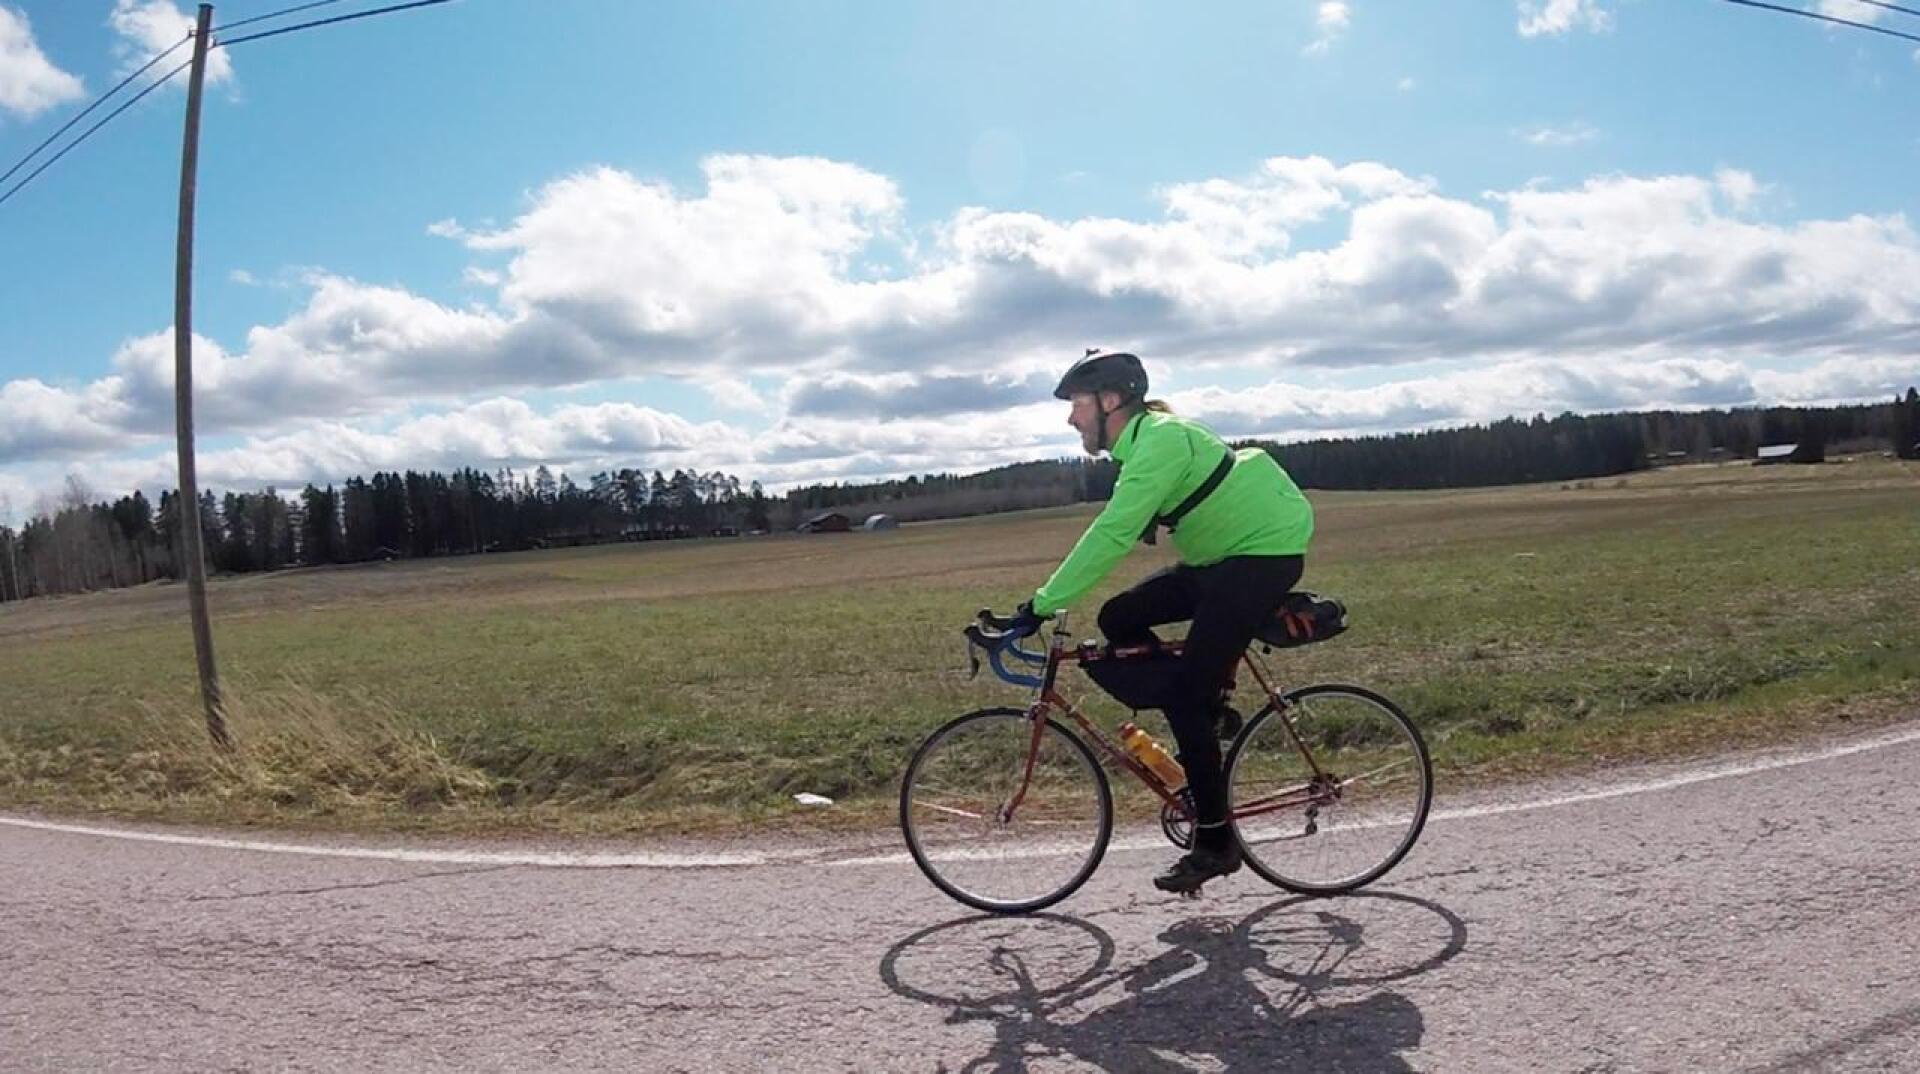 Randonneur-pyöräilijä Reima Taari polki viime vuonna pisimmillään 400 kilometriä 22:teen tuntiin. Tänä vuonna takana on kolme 200 kilometrin, yksi 300 kilometrin sekä useampia 50-150 kilometrin brevettiä.